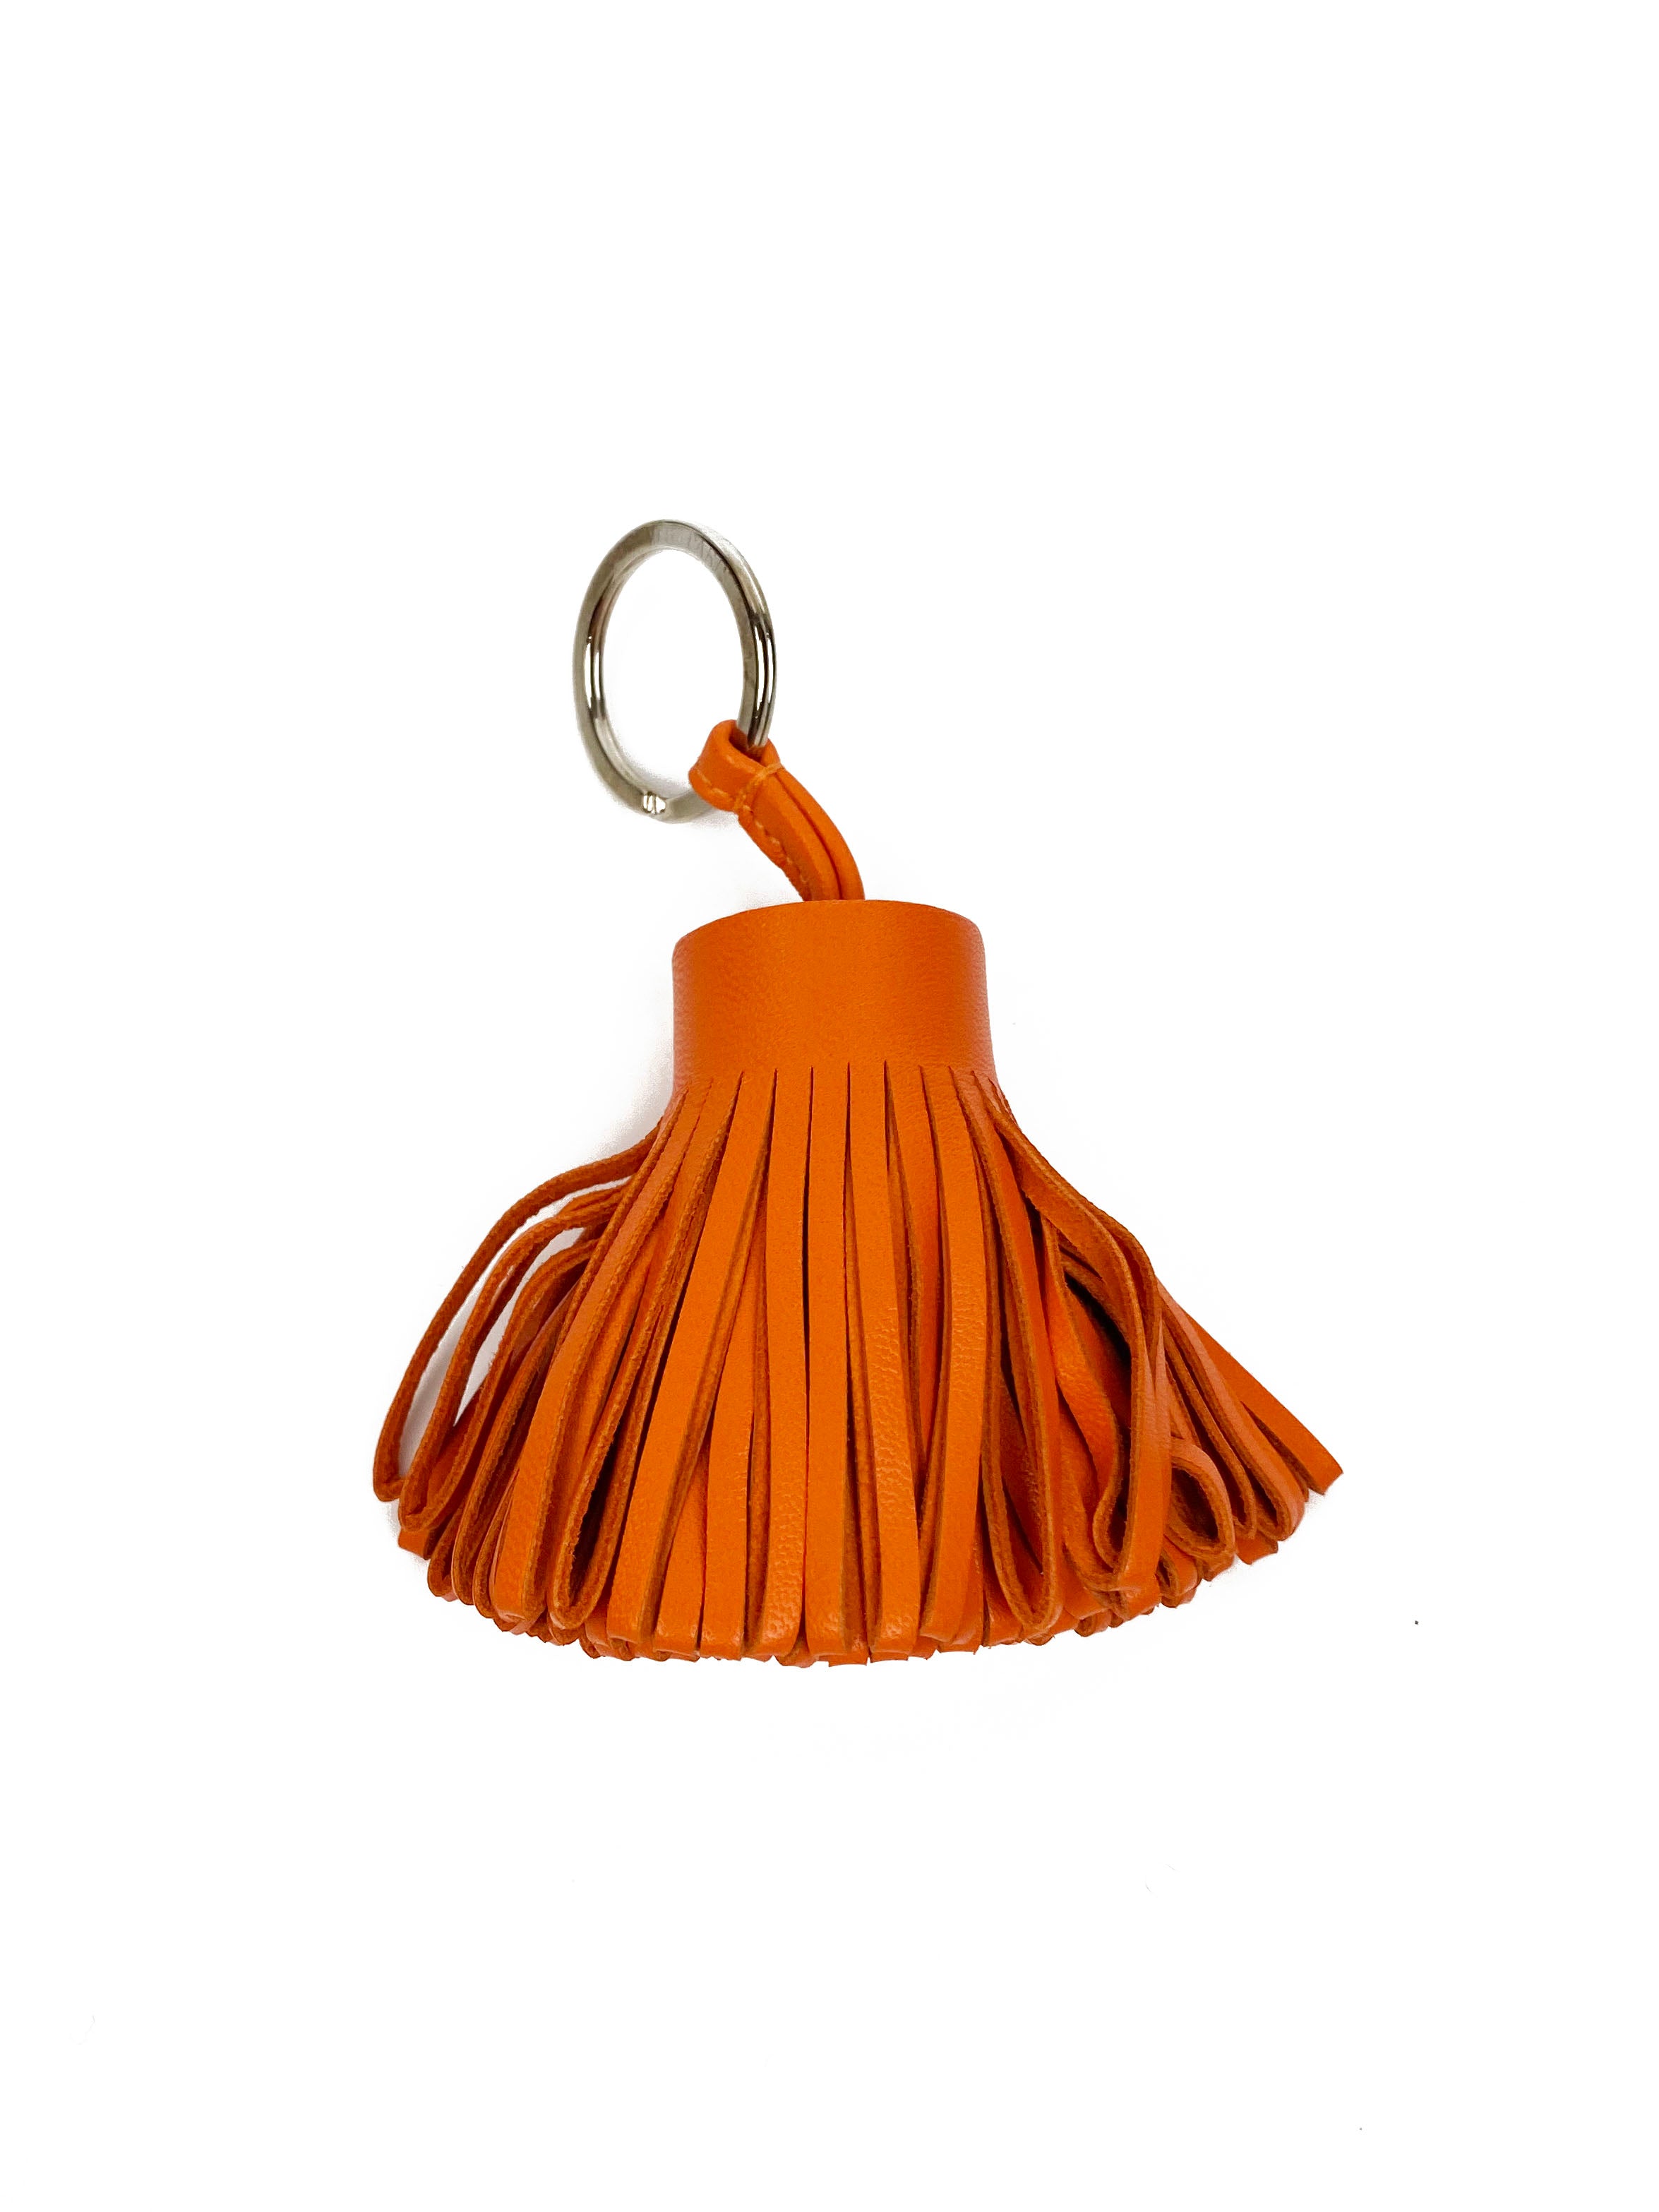 Hermes Orange Carmen Bag Charm